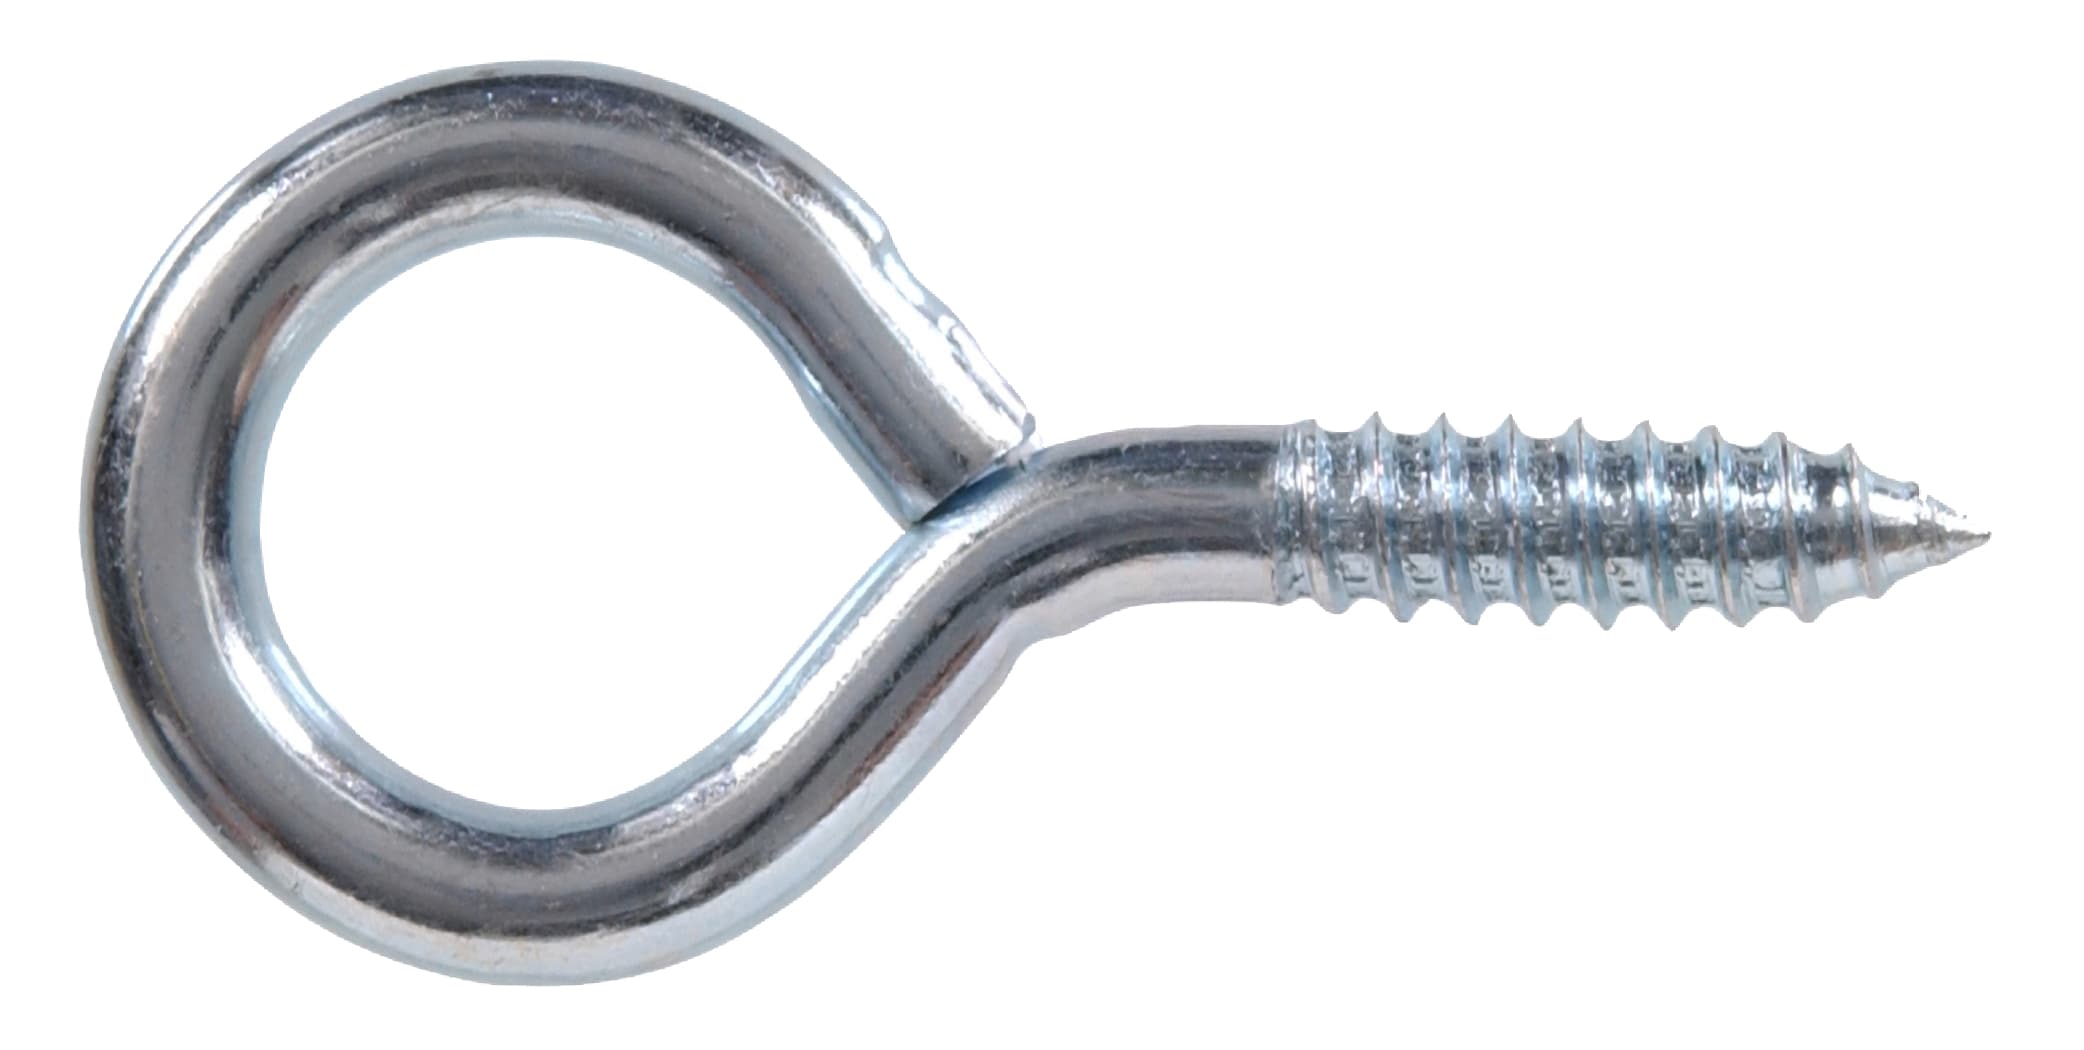 Hillman 0.106-in Zinc Steel Screw Eye Hook (10-Pack) in the Hooks